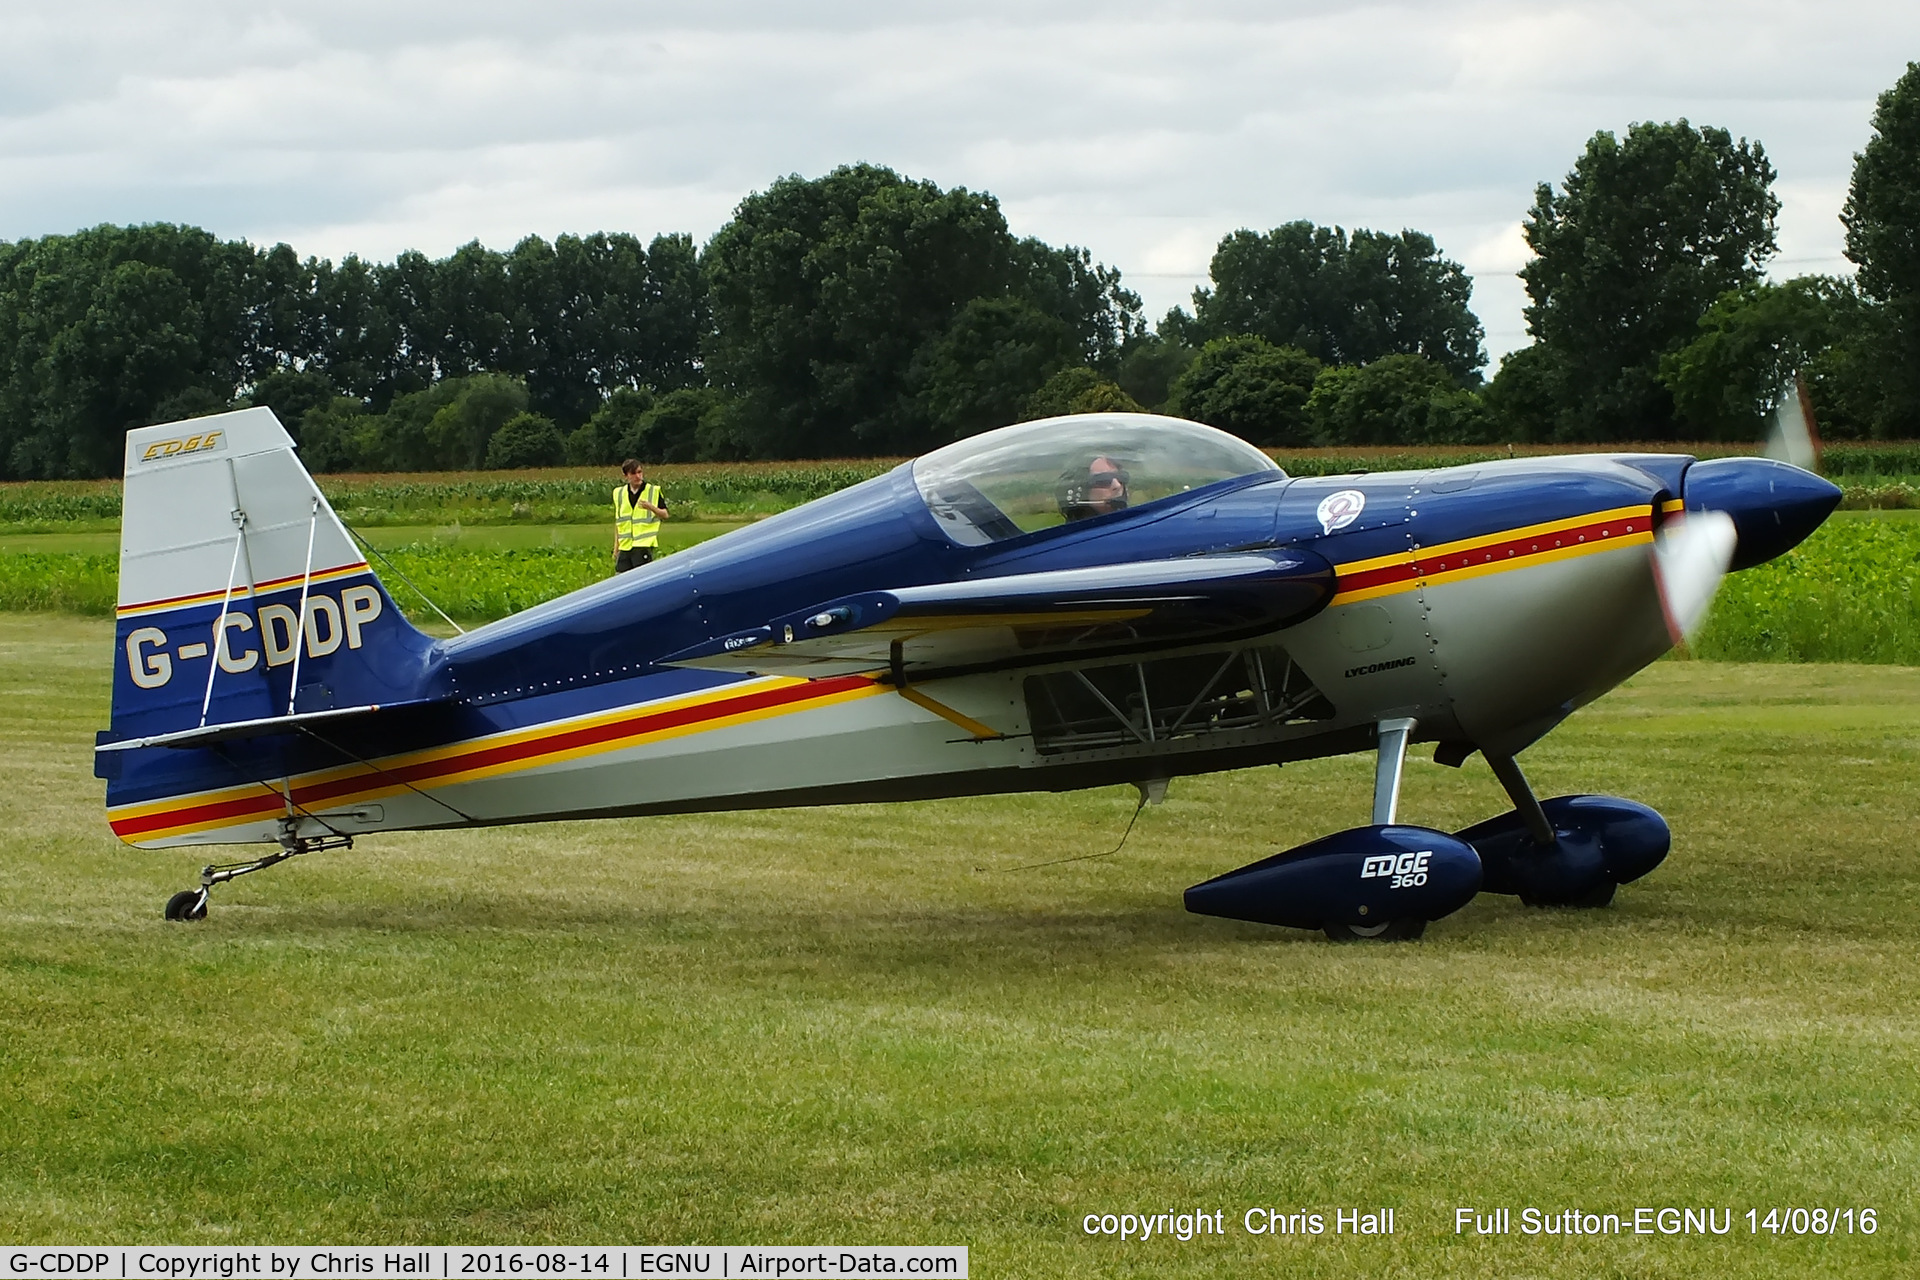 G-CDDP, 1993 Stephens Akro Laser Z230 C/N 001, at the LAA Vale of York Strut fly-in, Full Sutton